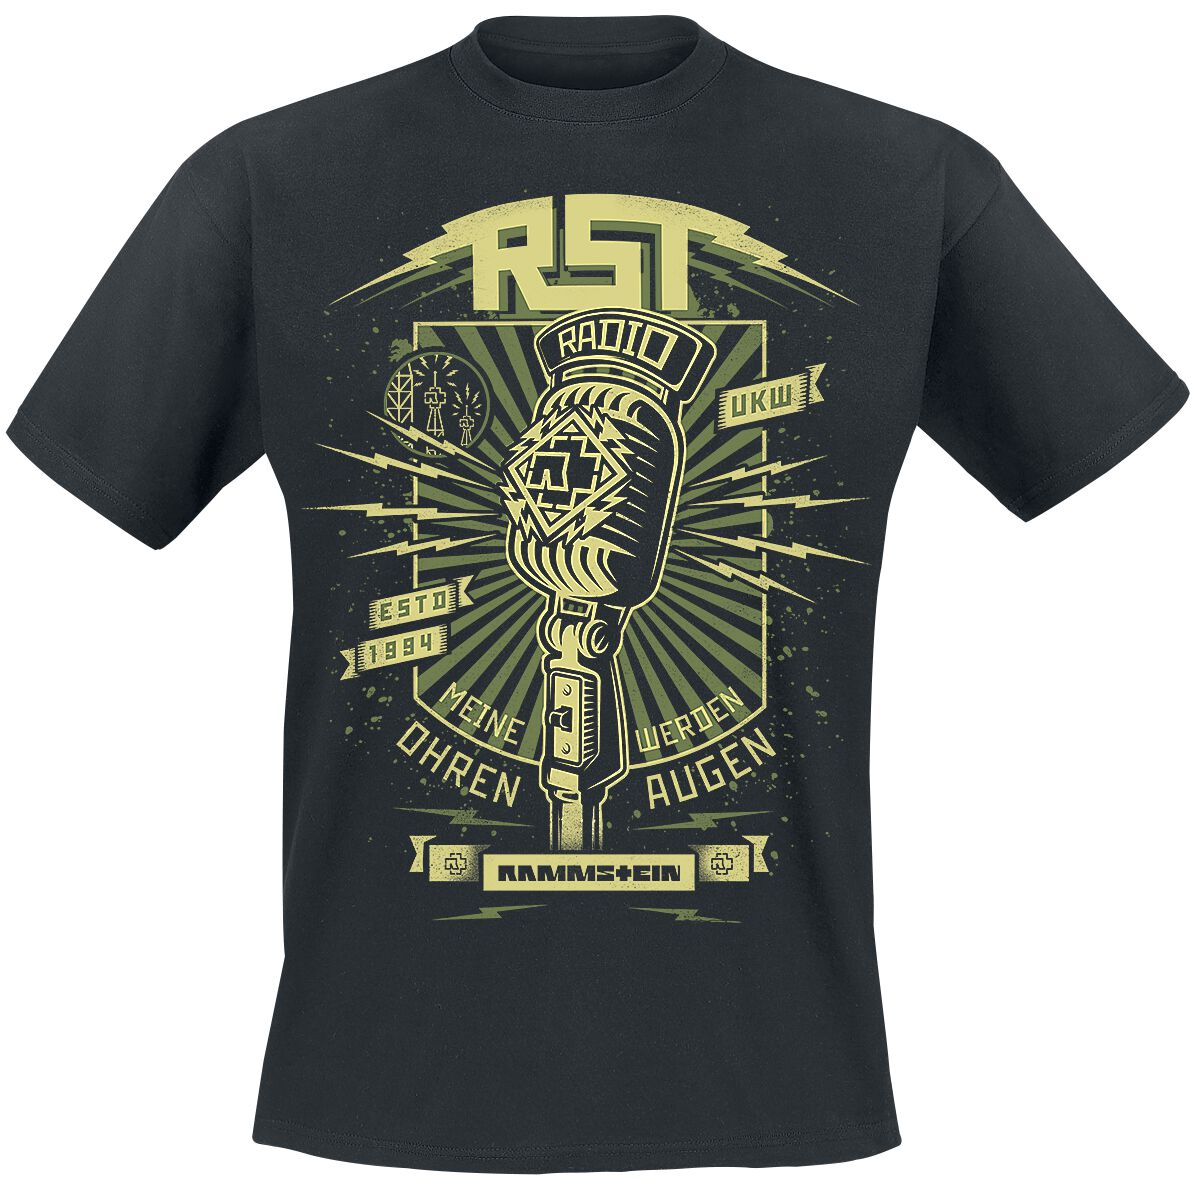 Rammstein T-Shirt - Radio - S bis 5XL - für Männer - Größe 5XL - schwarz  - Lizenziertes Merchandise!